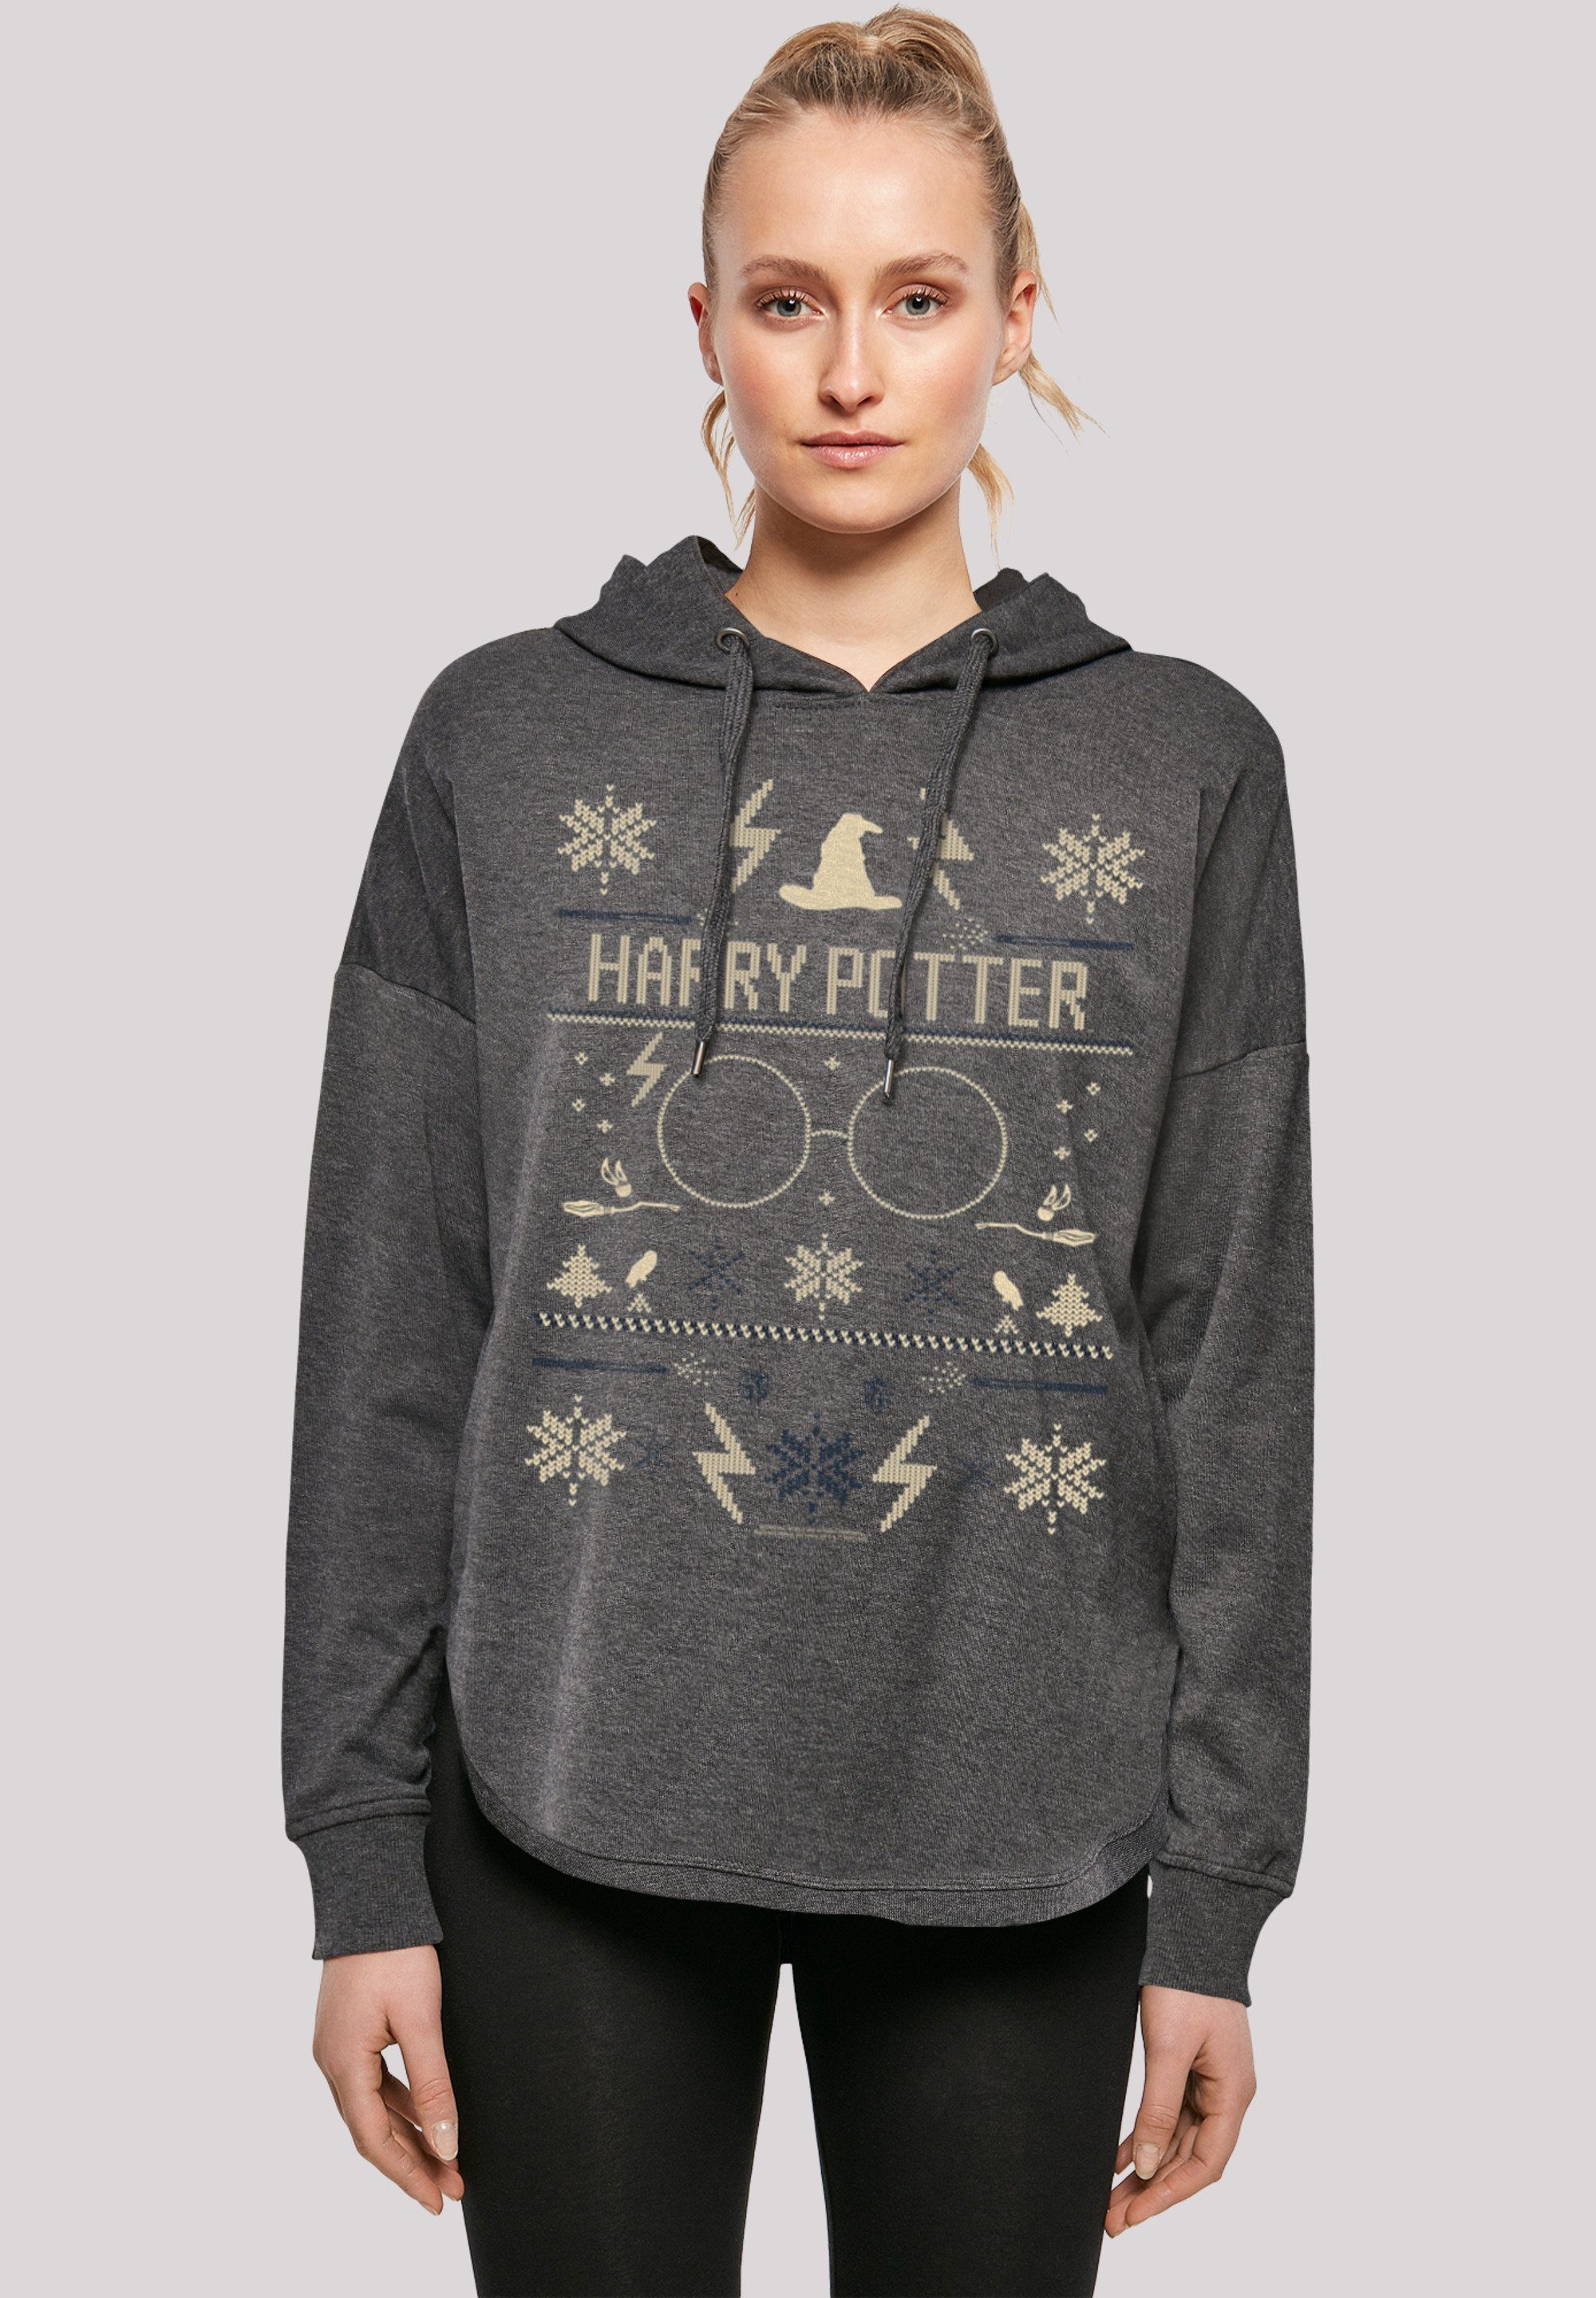 sportlichem Look mit Weihnachten F4NT4STIC Hoodie Christmas Harry Potter Print, Gemütlicher Oversize Kapuzenpullover